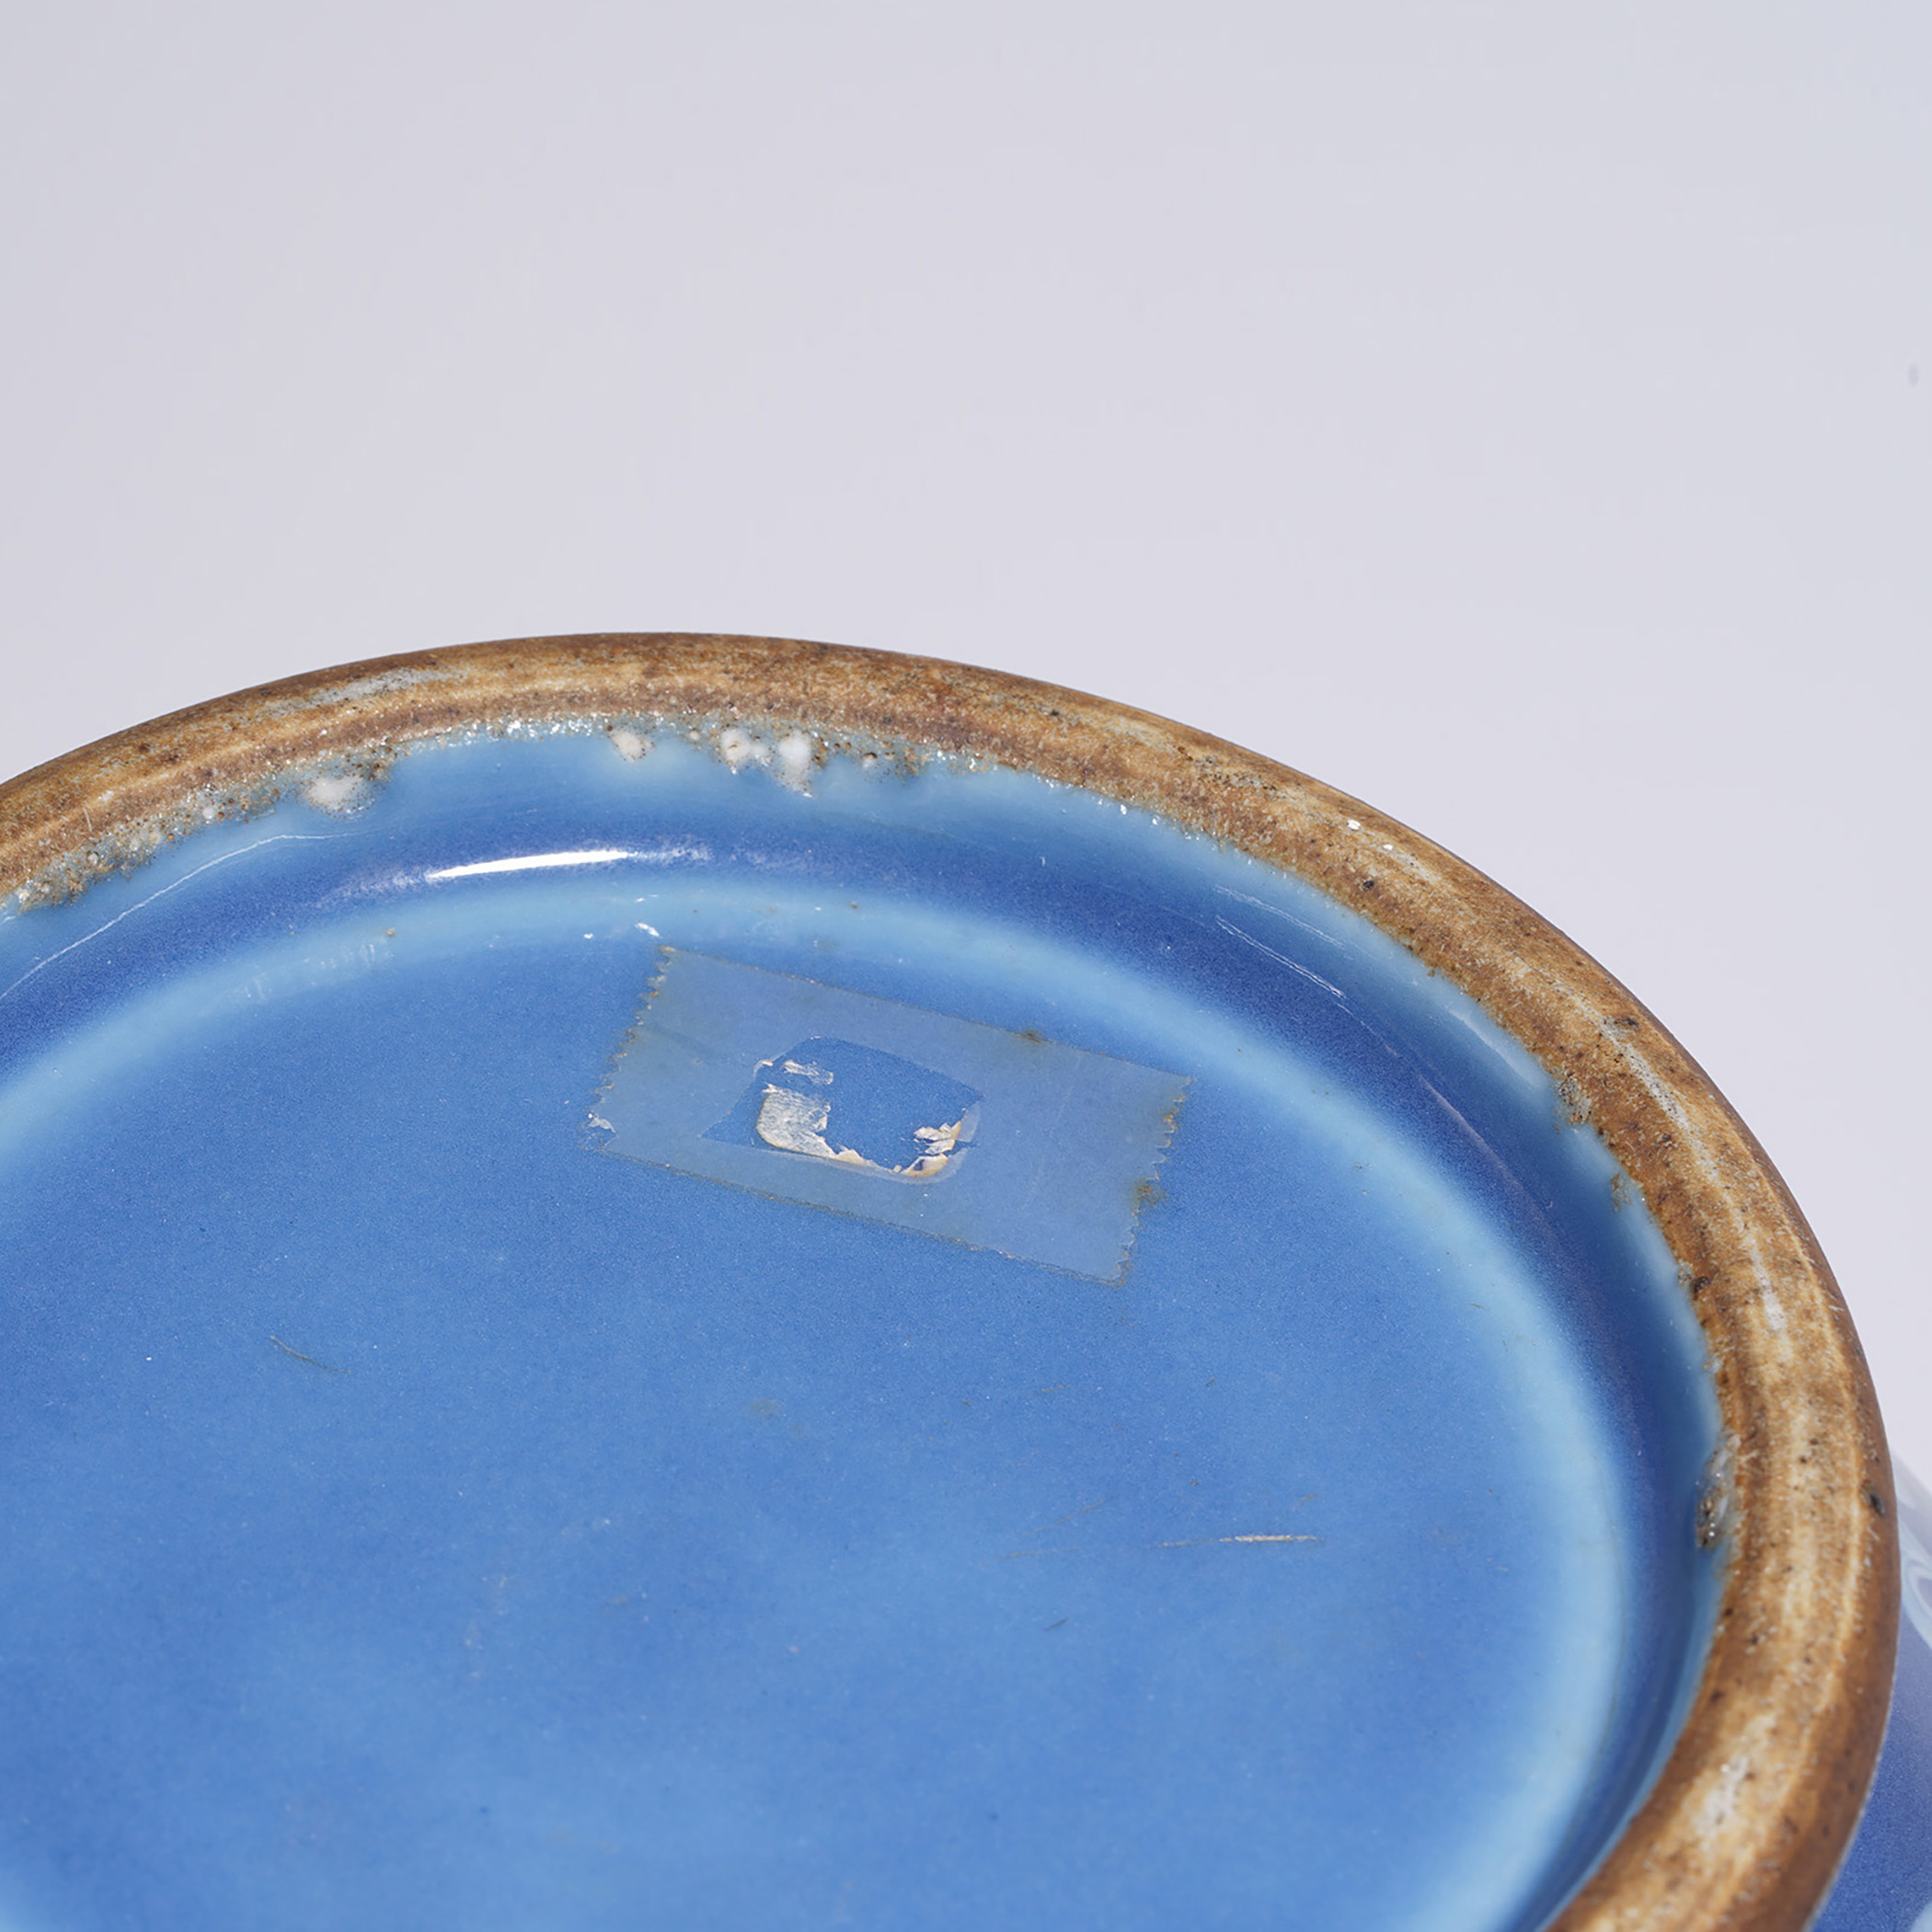 8cm拍品描述瓷品相良好来源:郭克礼珍藏说明:蓝釉堆白工艺属高温釉彩